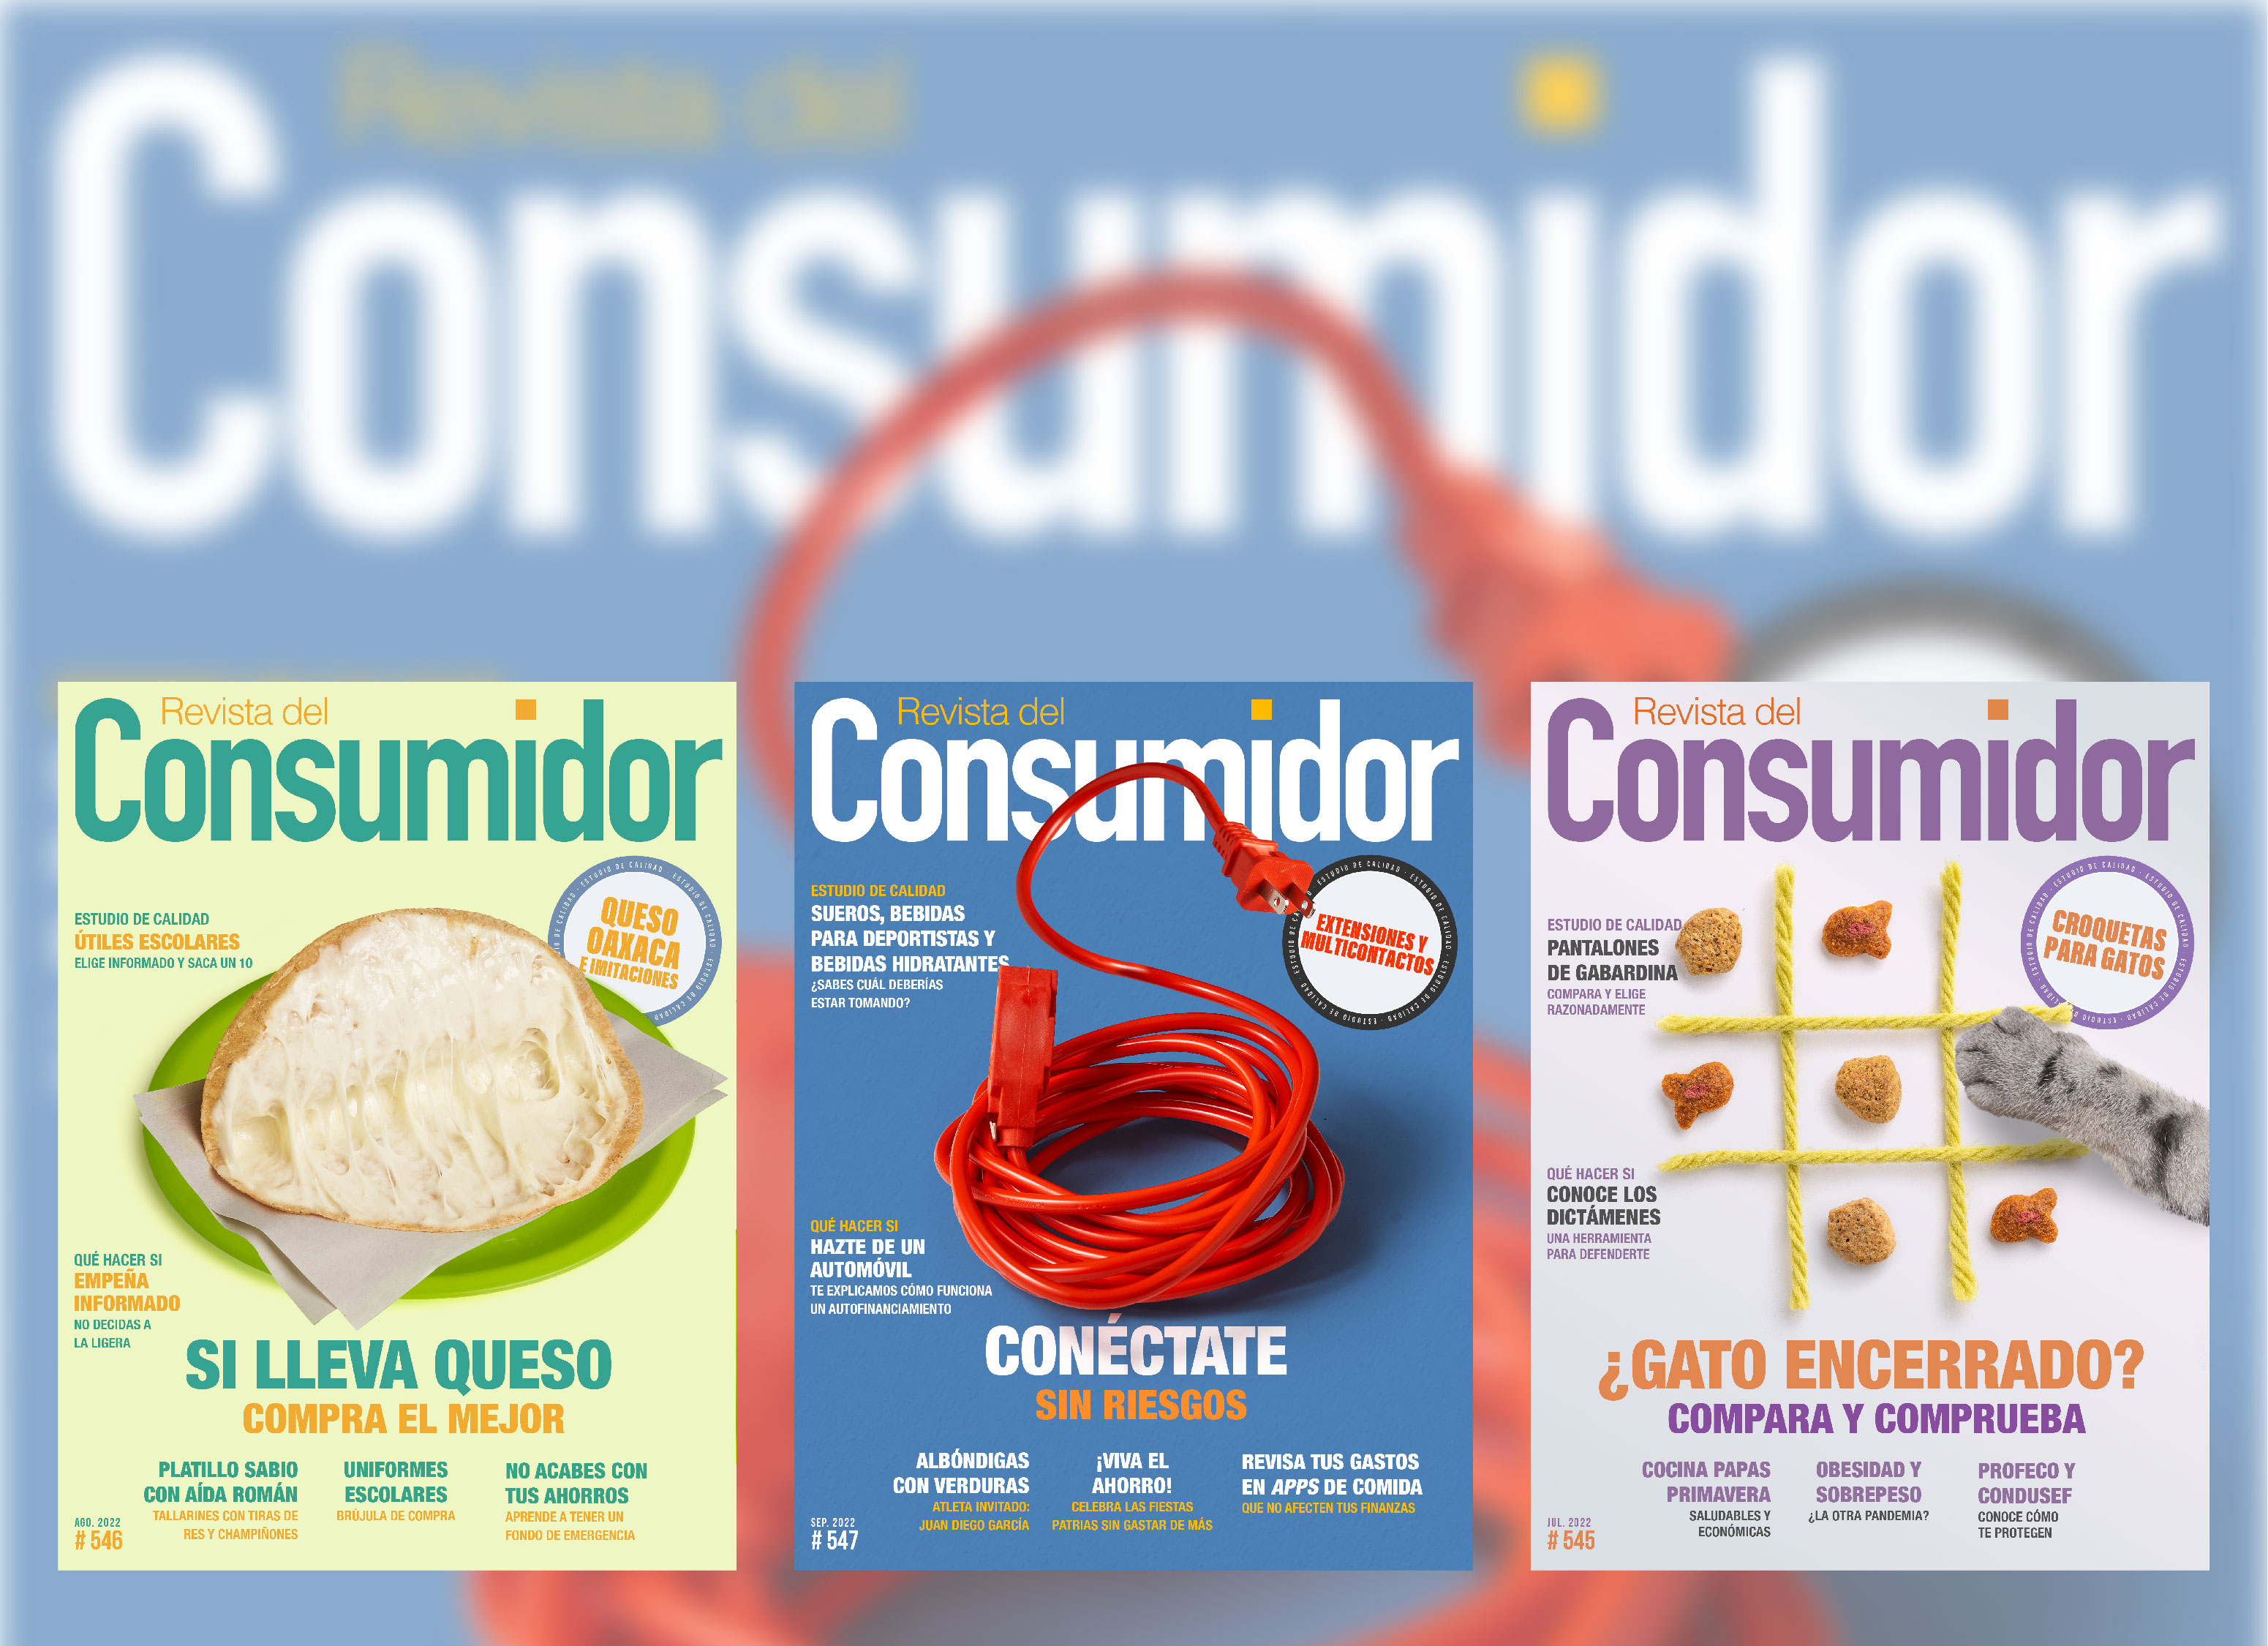 La Revista del Consumidor lleva más de cuatro décadas refrendando un compromiso con los consumidores